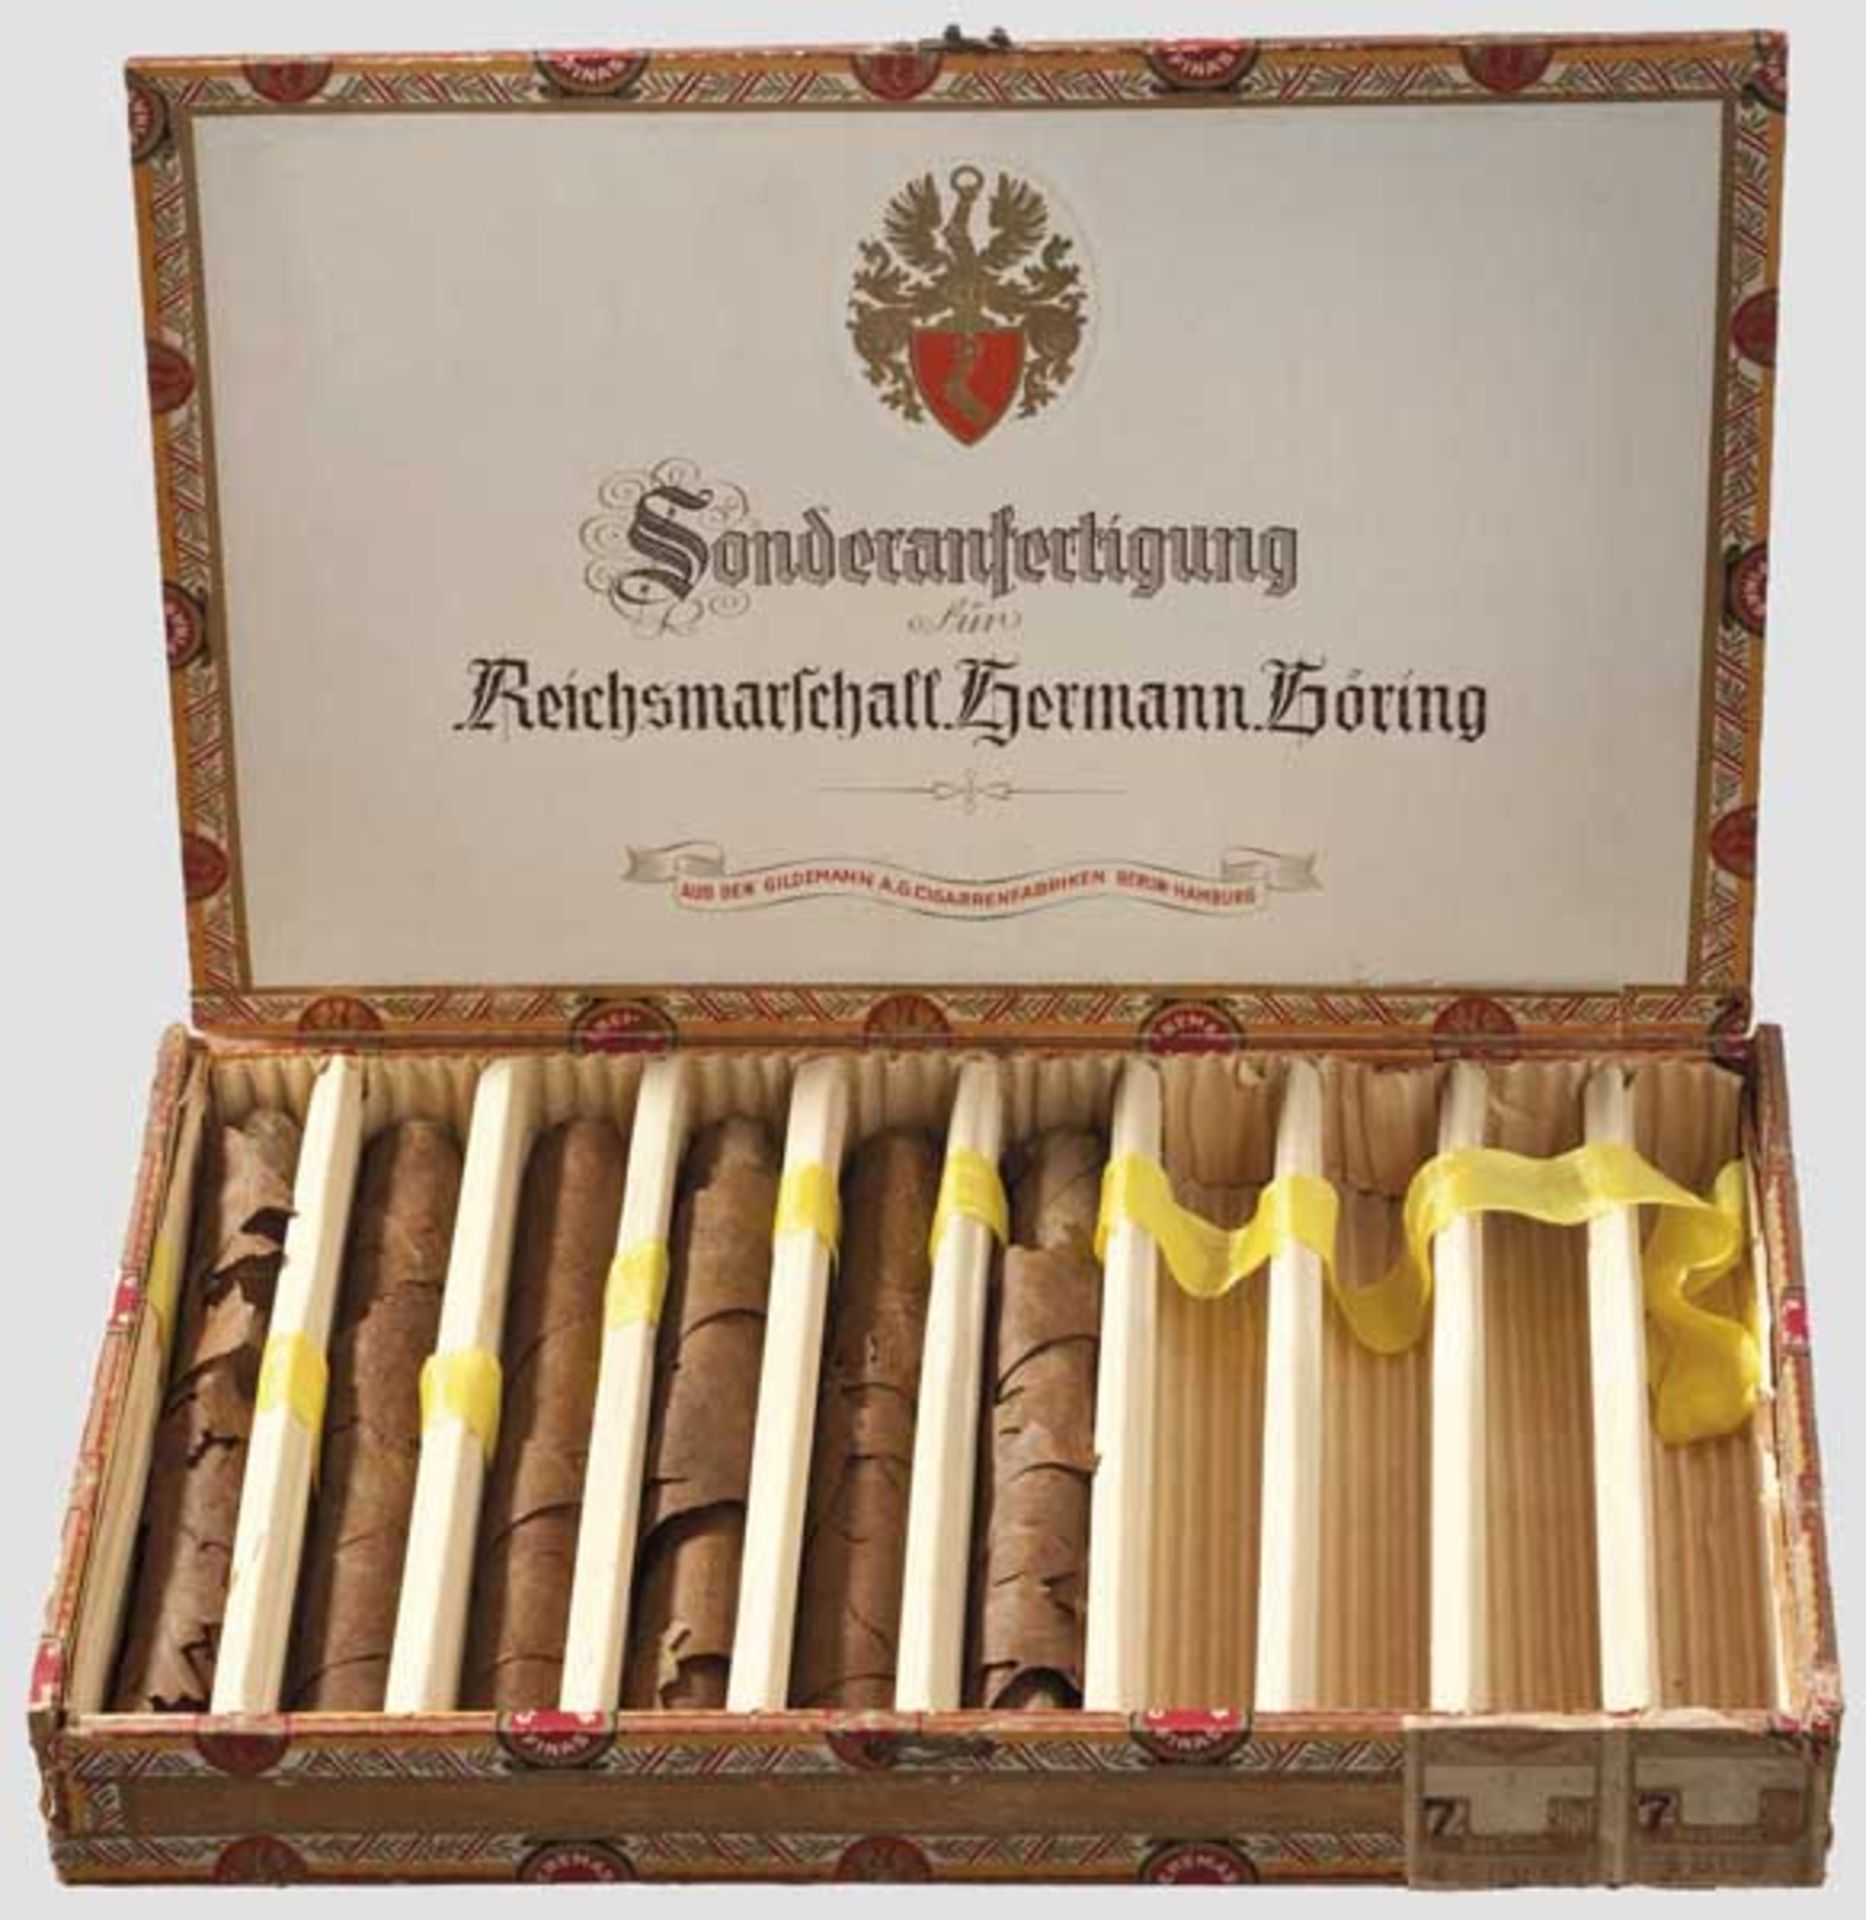 Zigarrenkiste aus der "Sonderanfertigung für Reichsmarschall Hermann Göring" Die Zigarren offen in